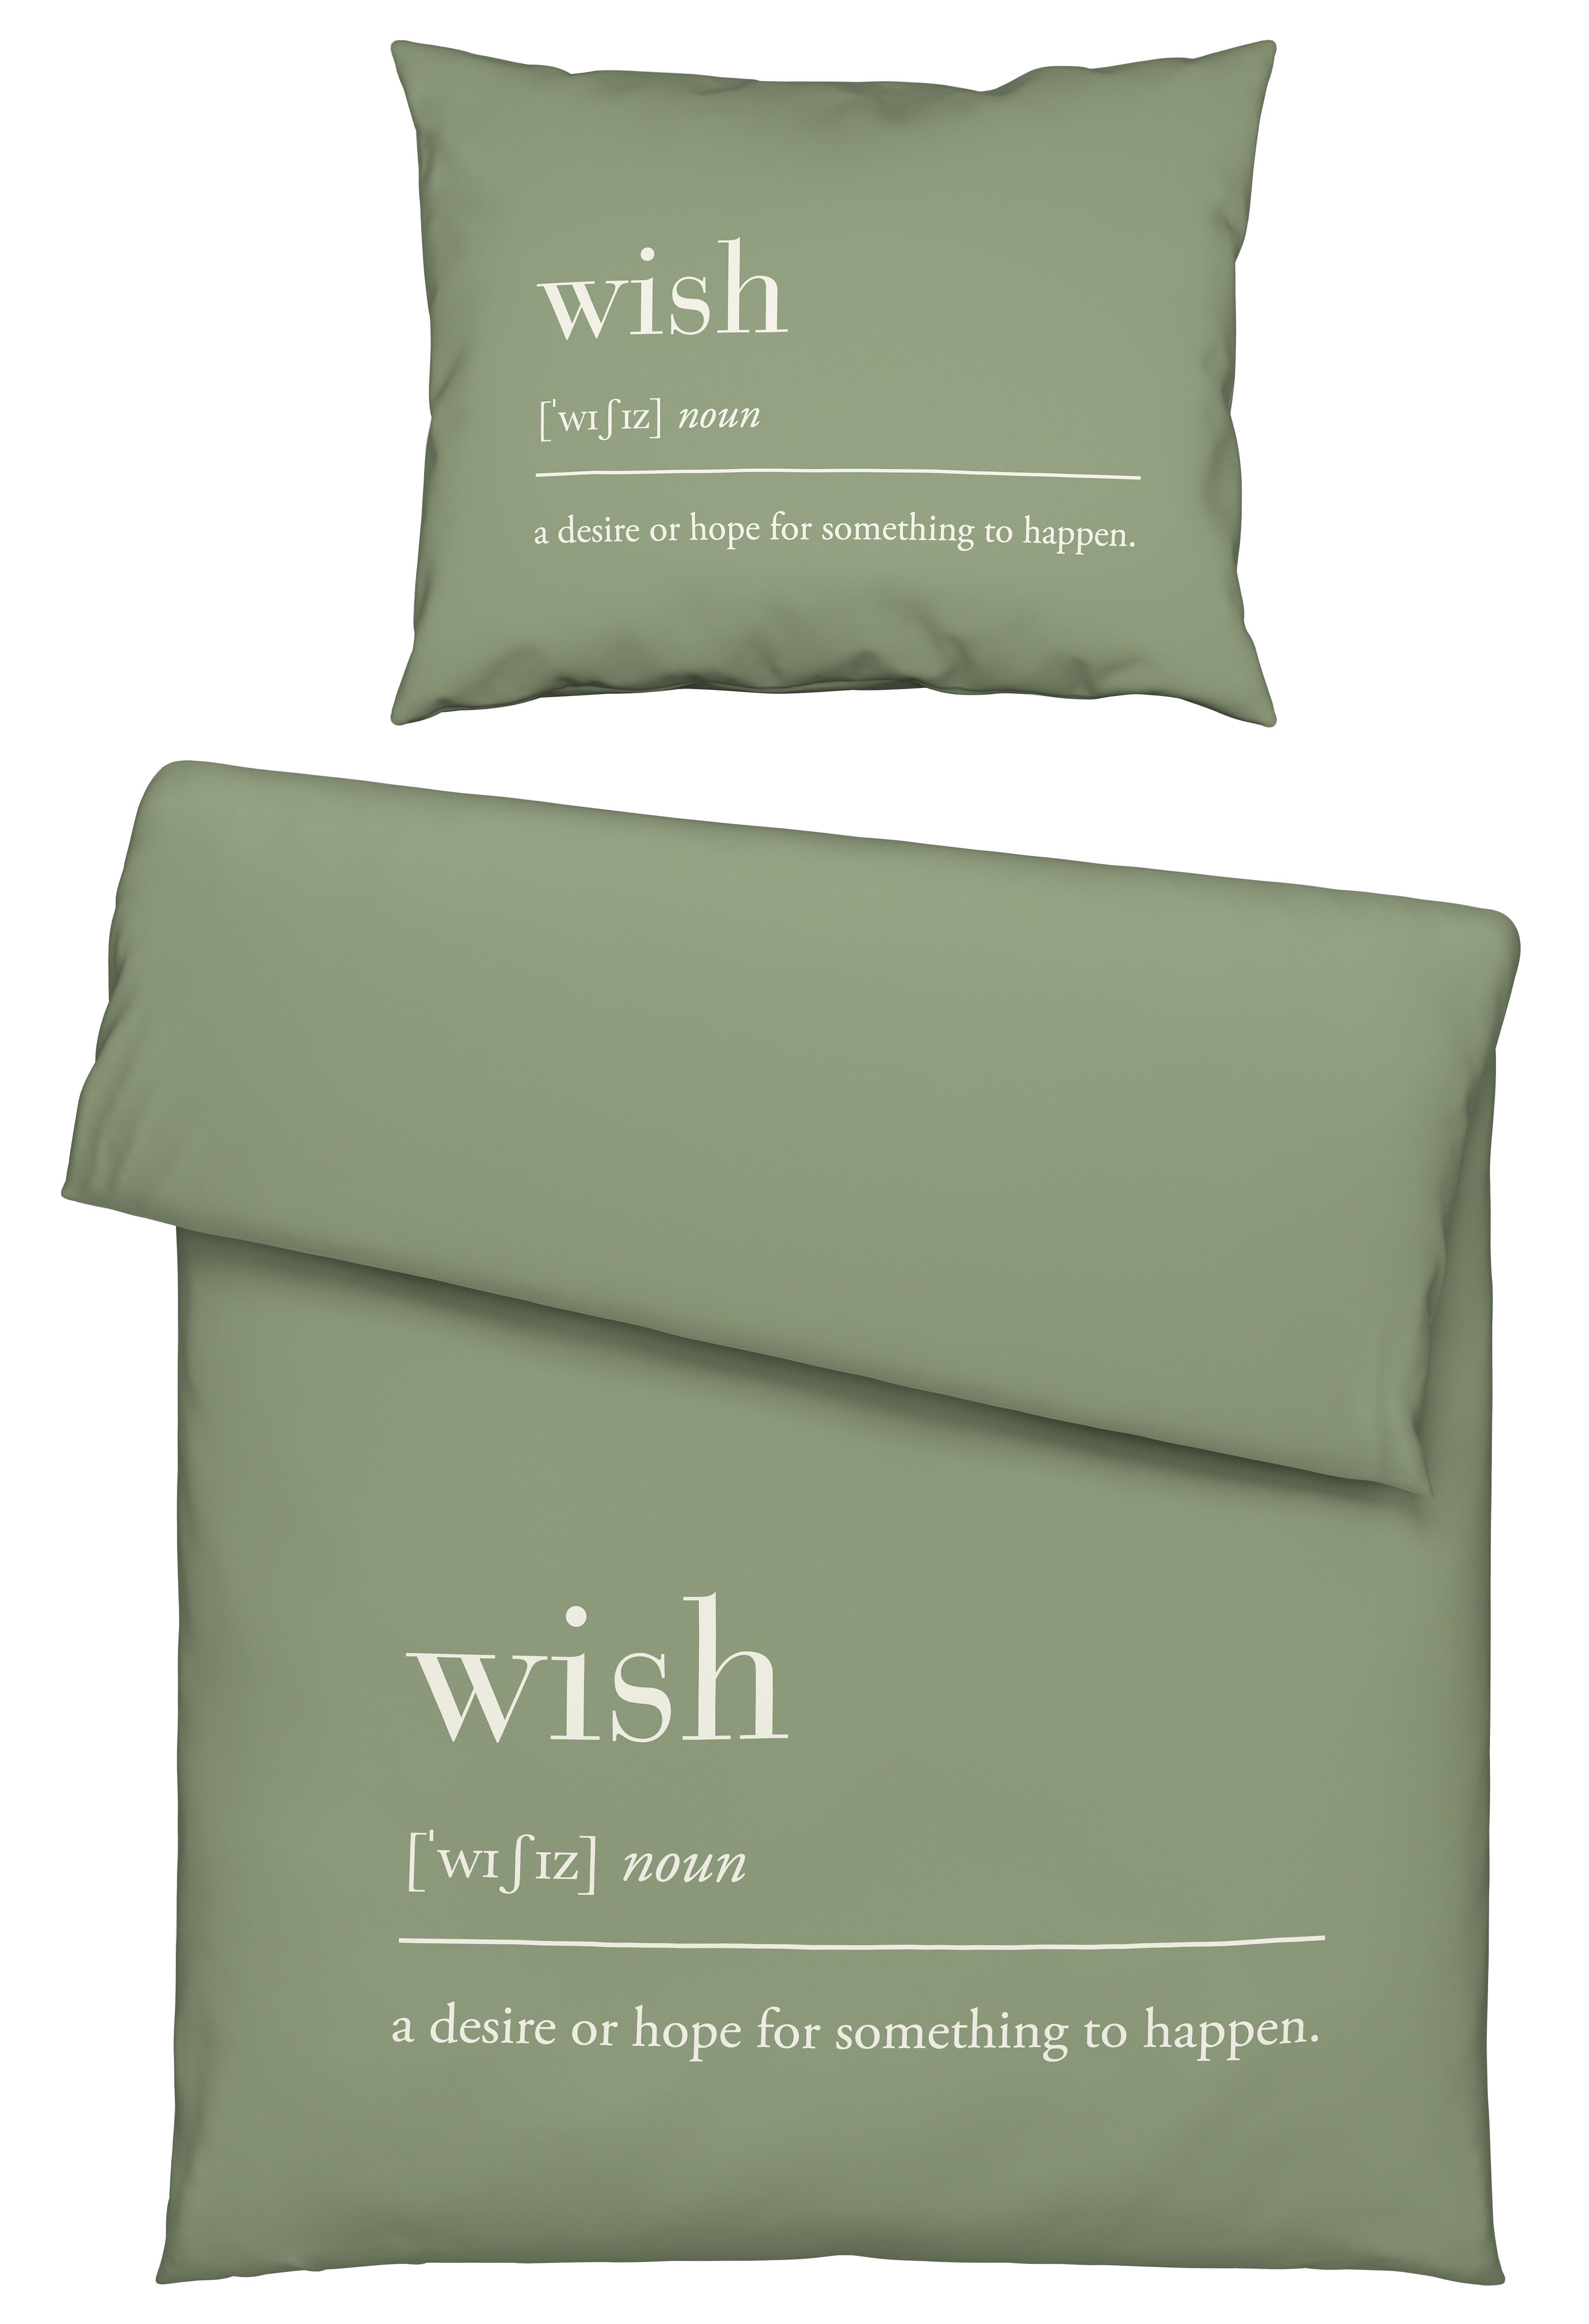 Povlečení Wish, 140/200cm, Zelená - olivově zelená, Moderní, textil (140/200cm) - Modern Living